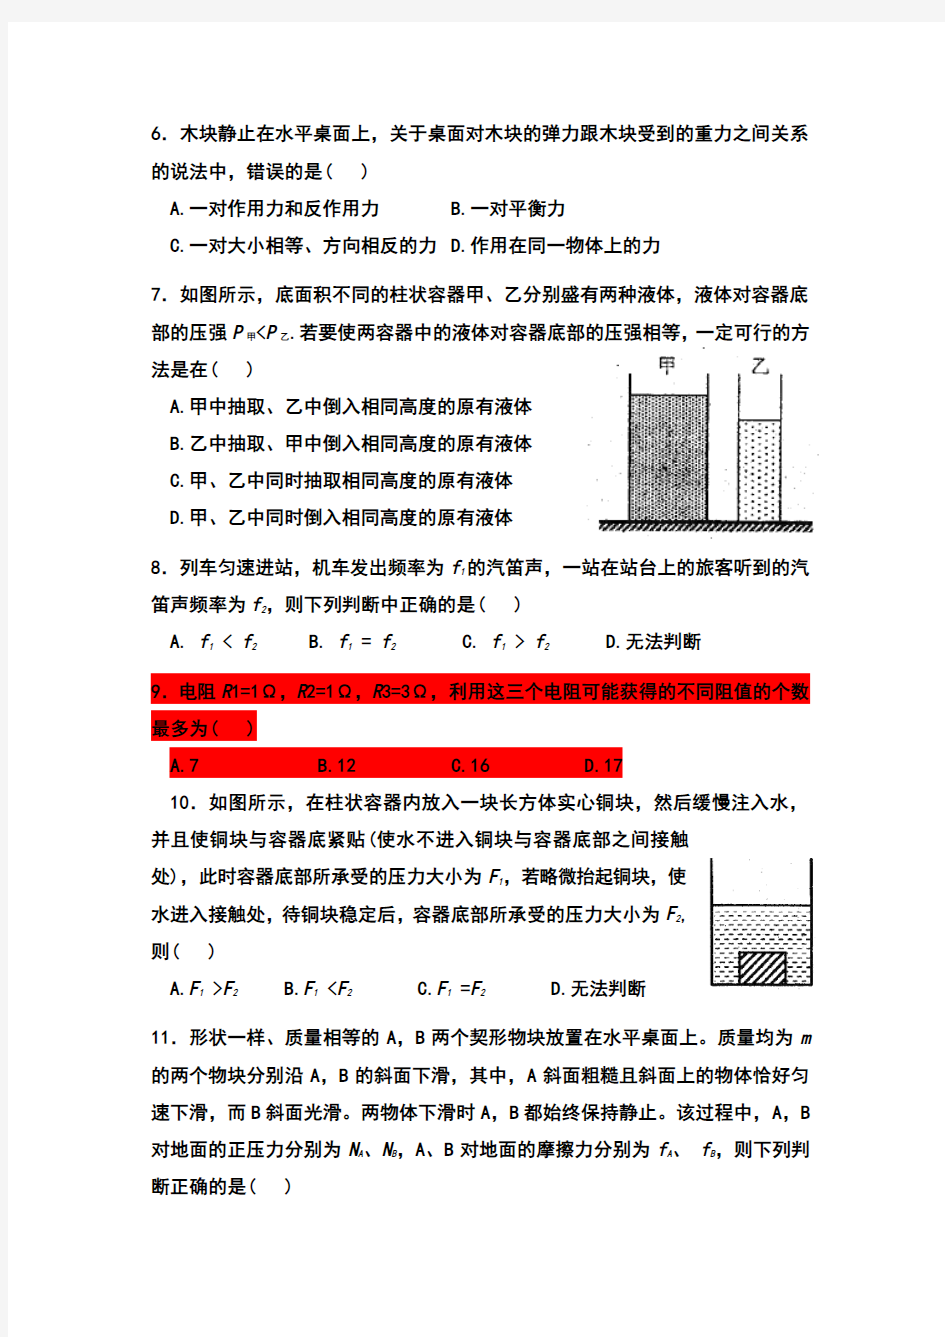 2017年上海市第31届大同杯物理竞赛初赛试卷及参考答案(改)